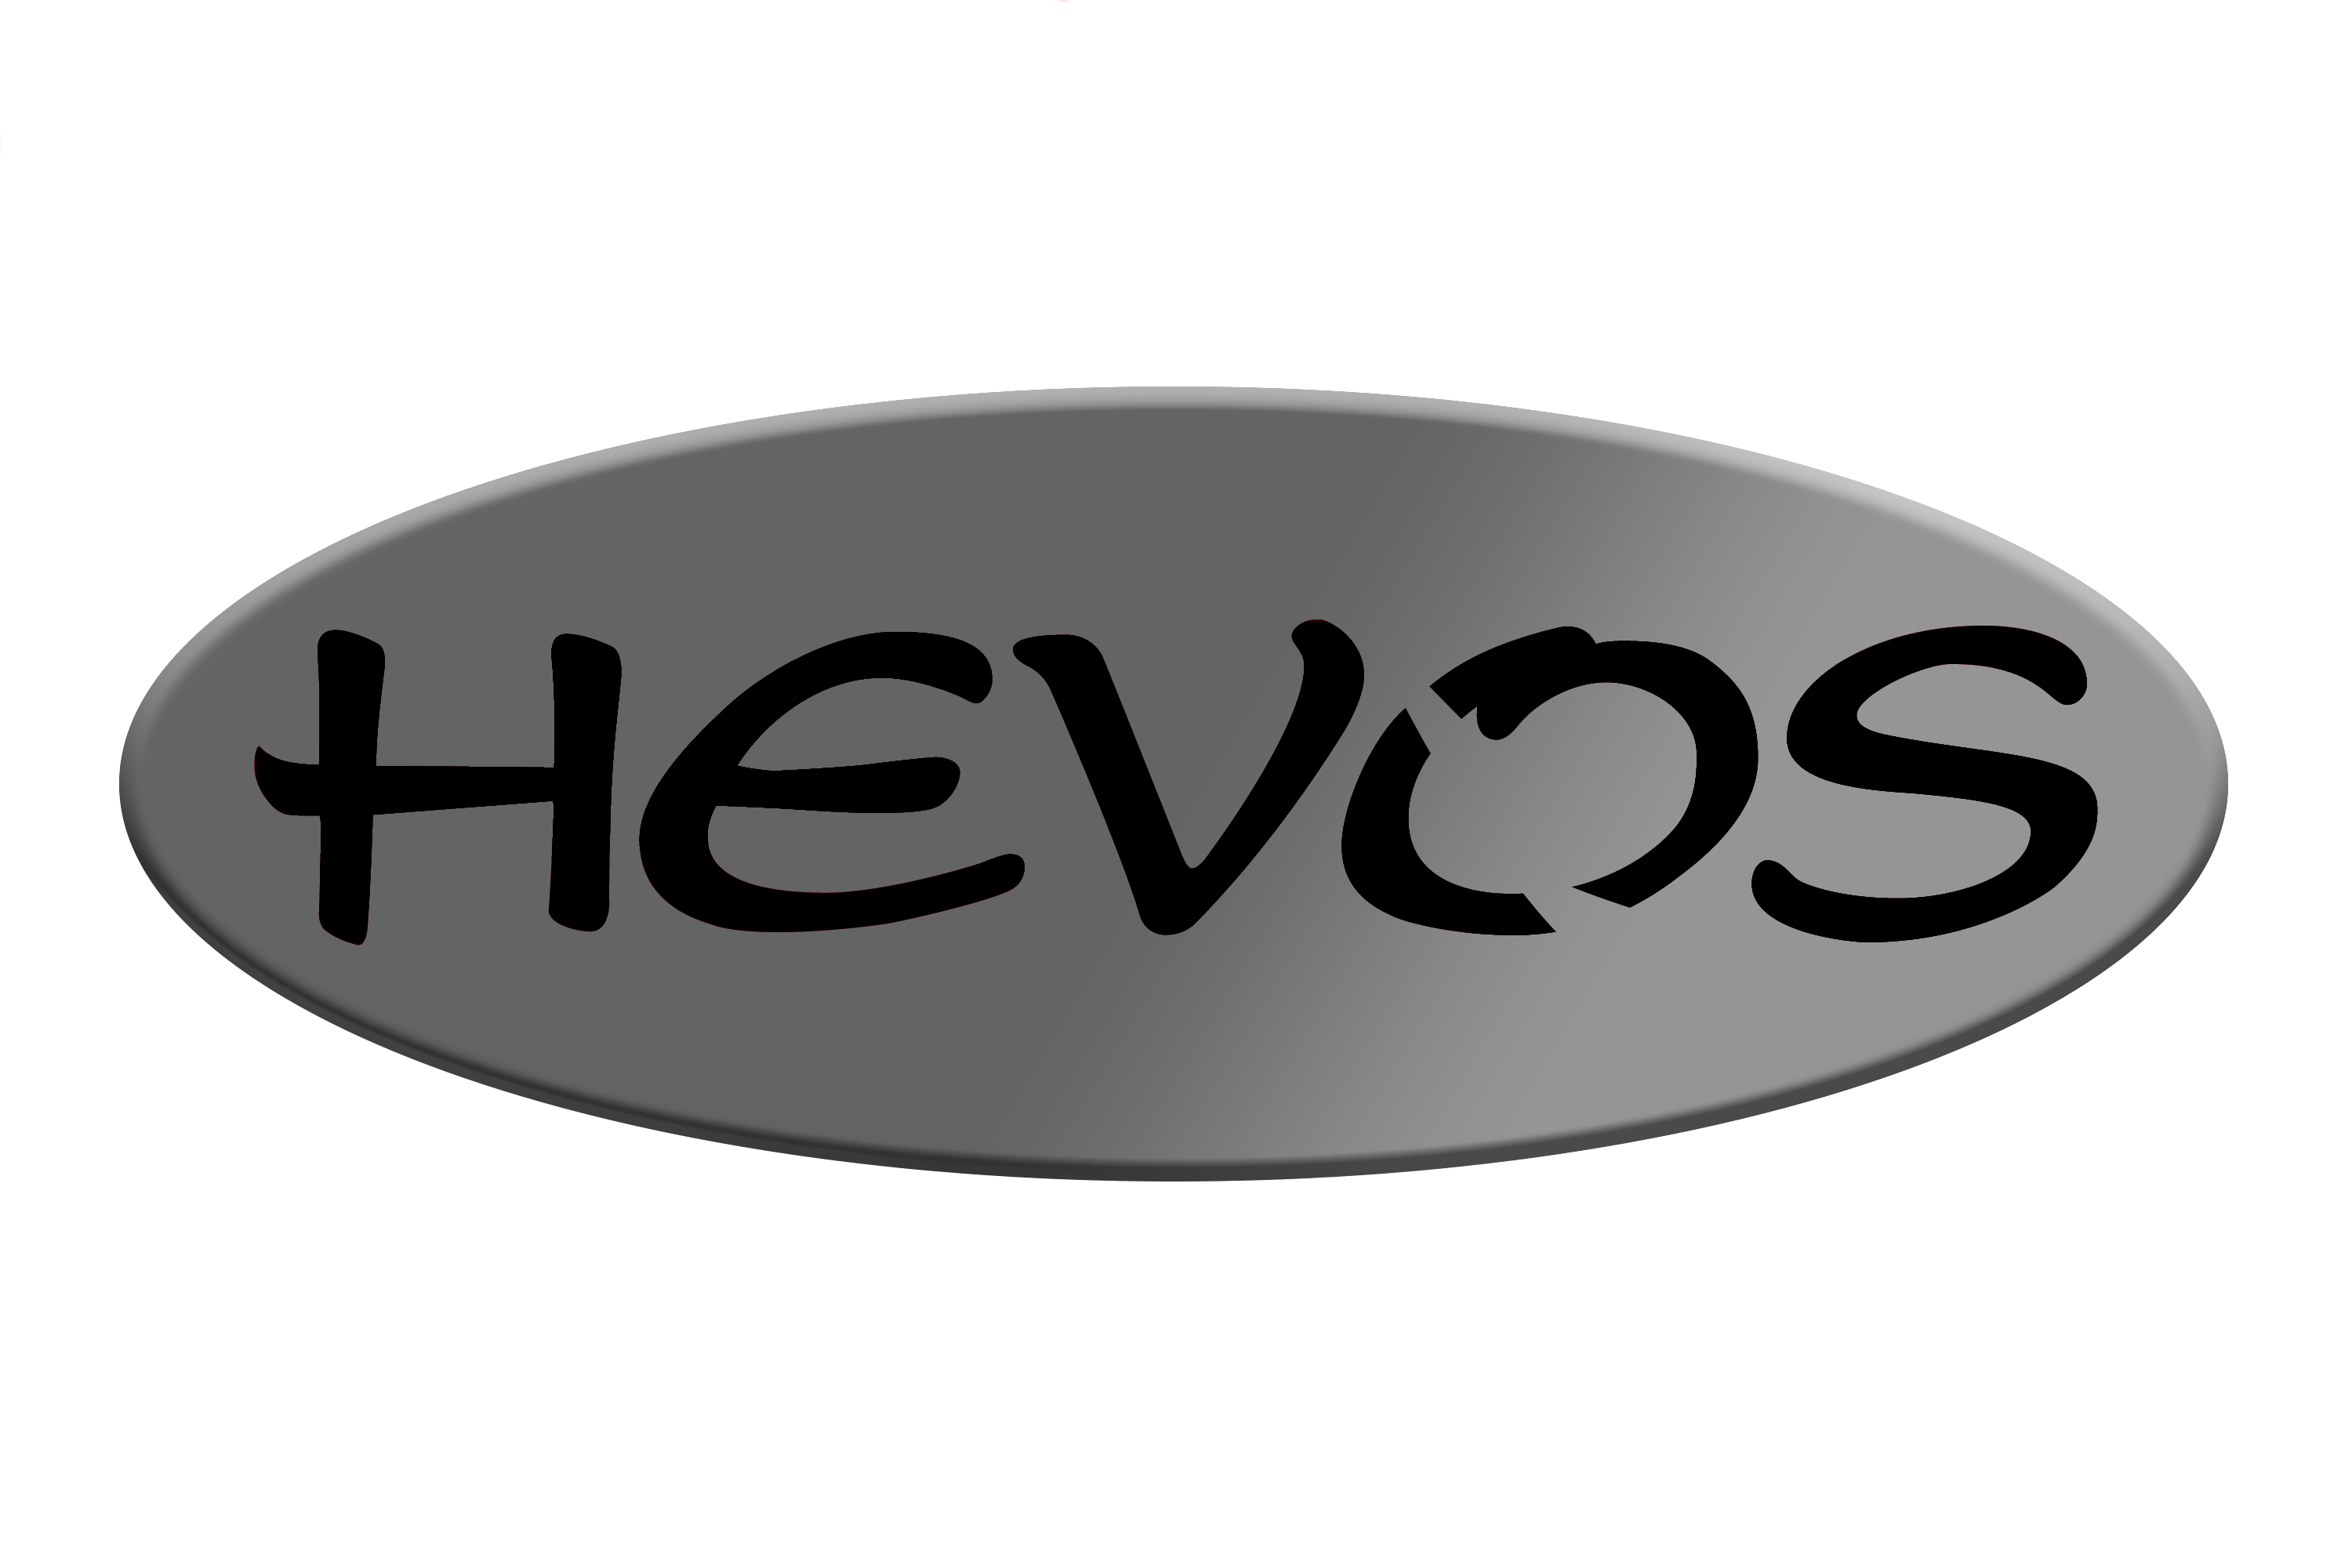 Hevos